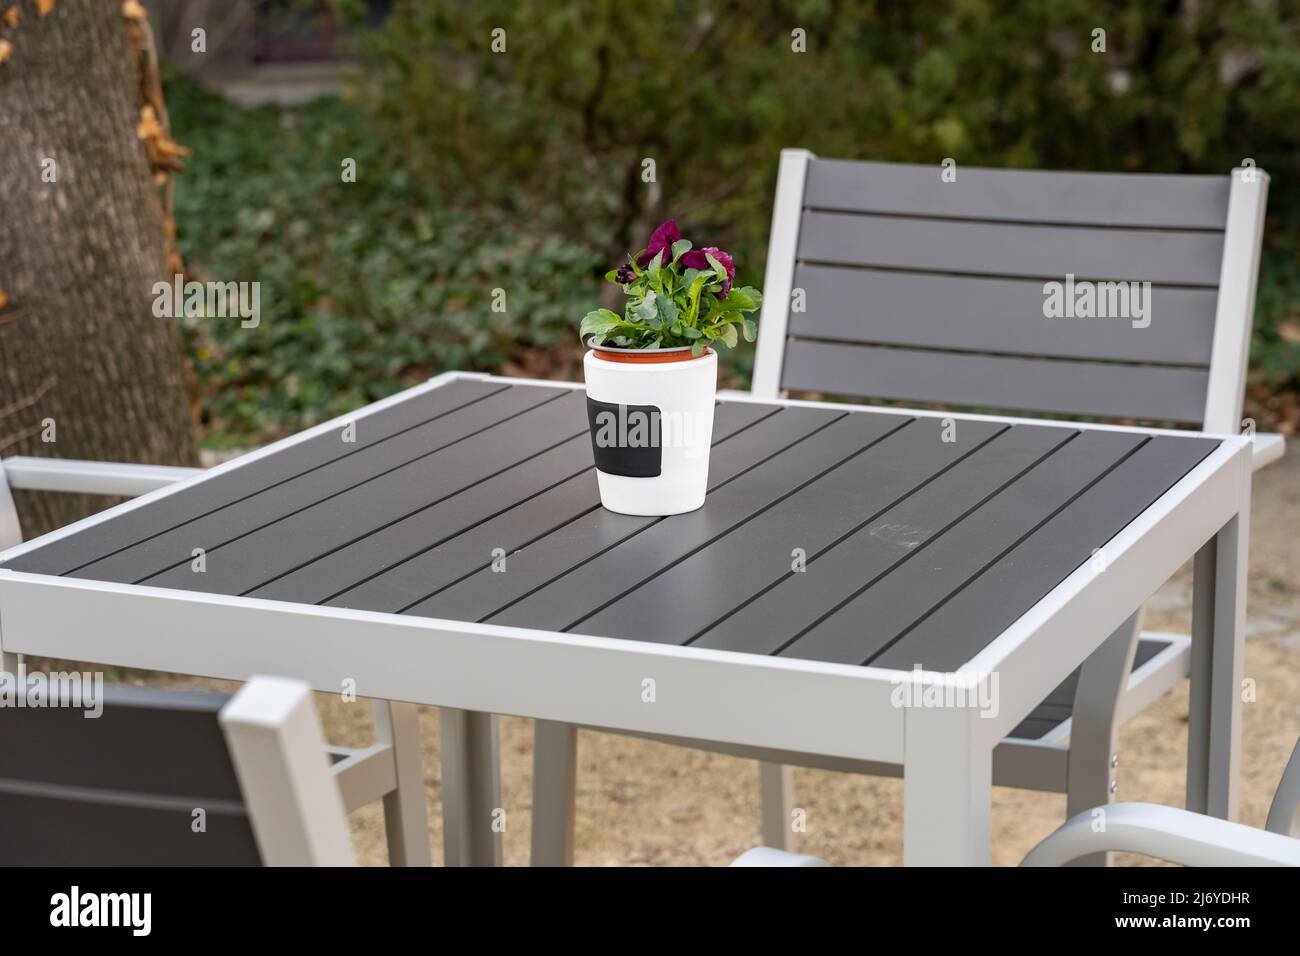 Pianta in vaso su un tavolo da giardino. Pentola bianca con un fiore viola all'aperto in una caffetteria. Ambiente rilassante luogo per calmarsi in un giardino. Foto Stock